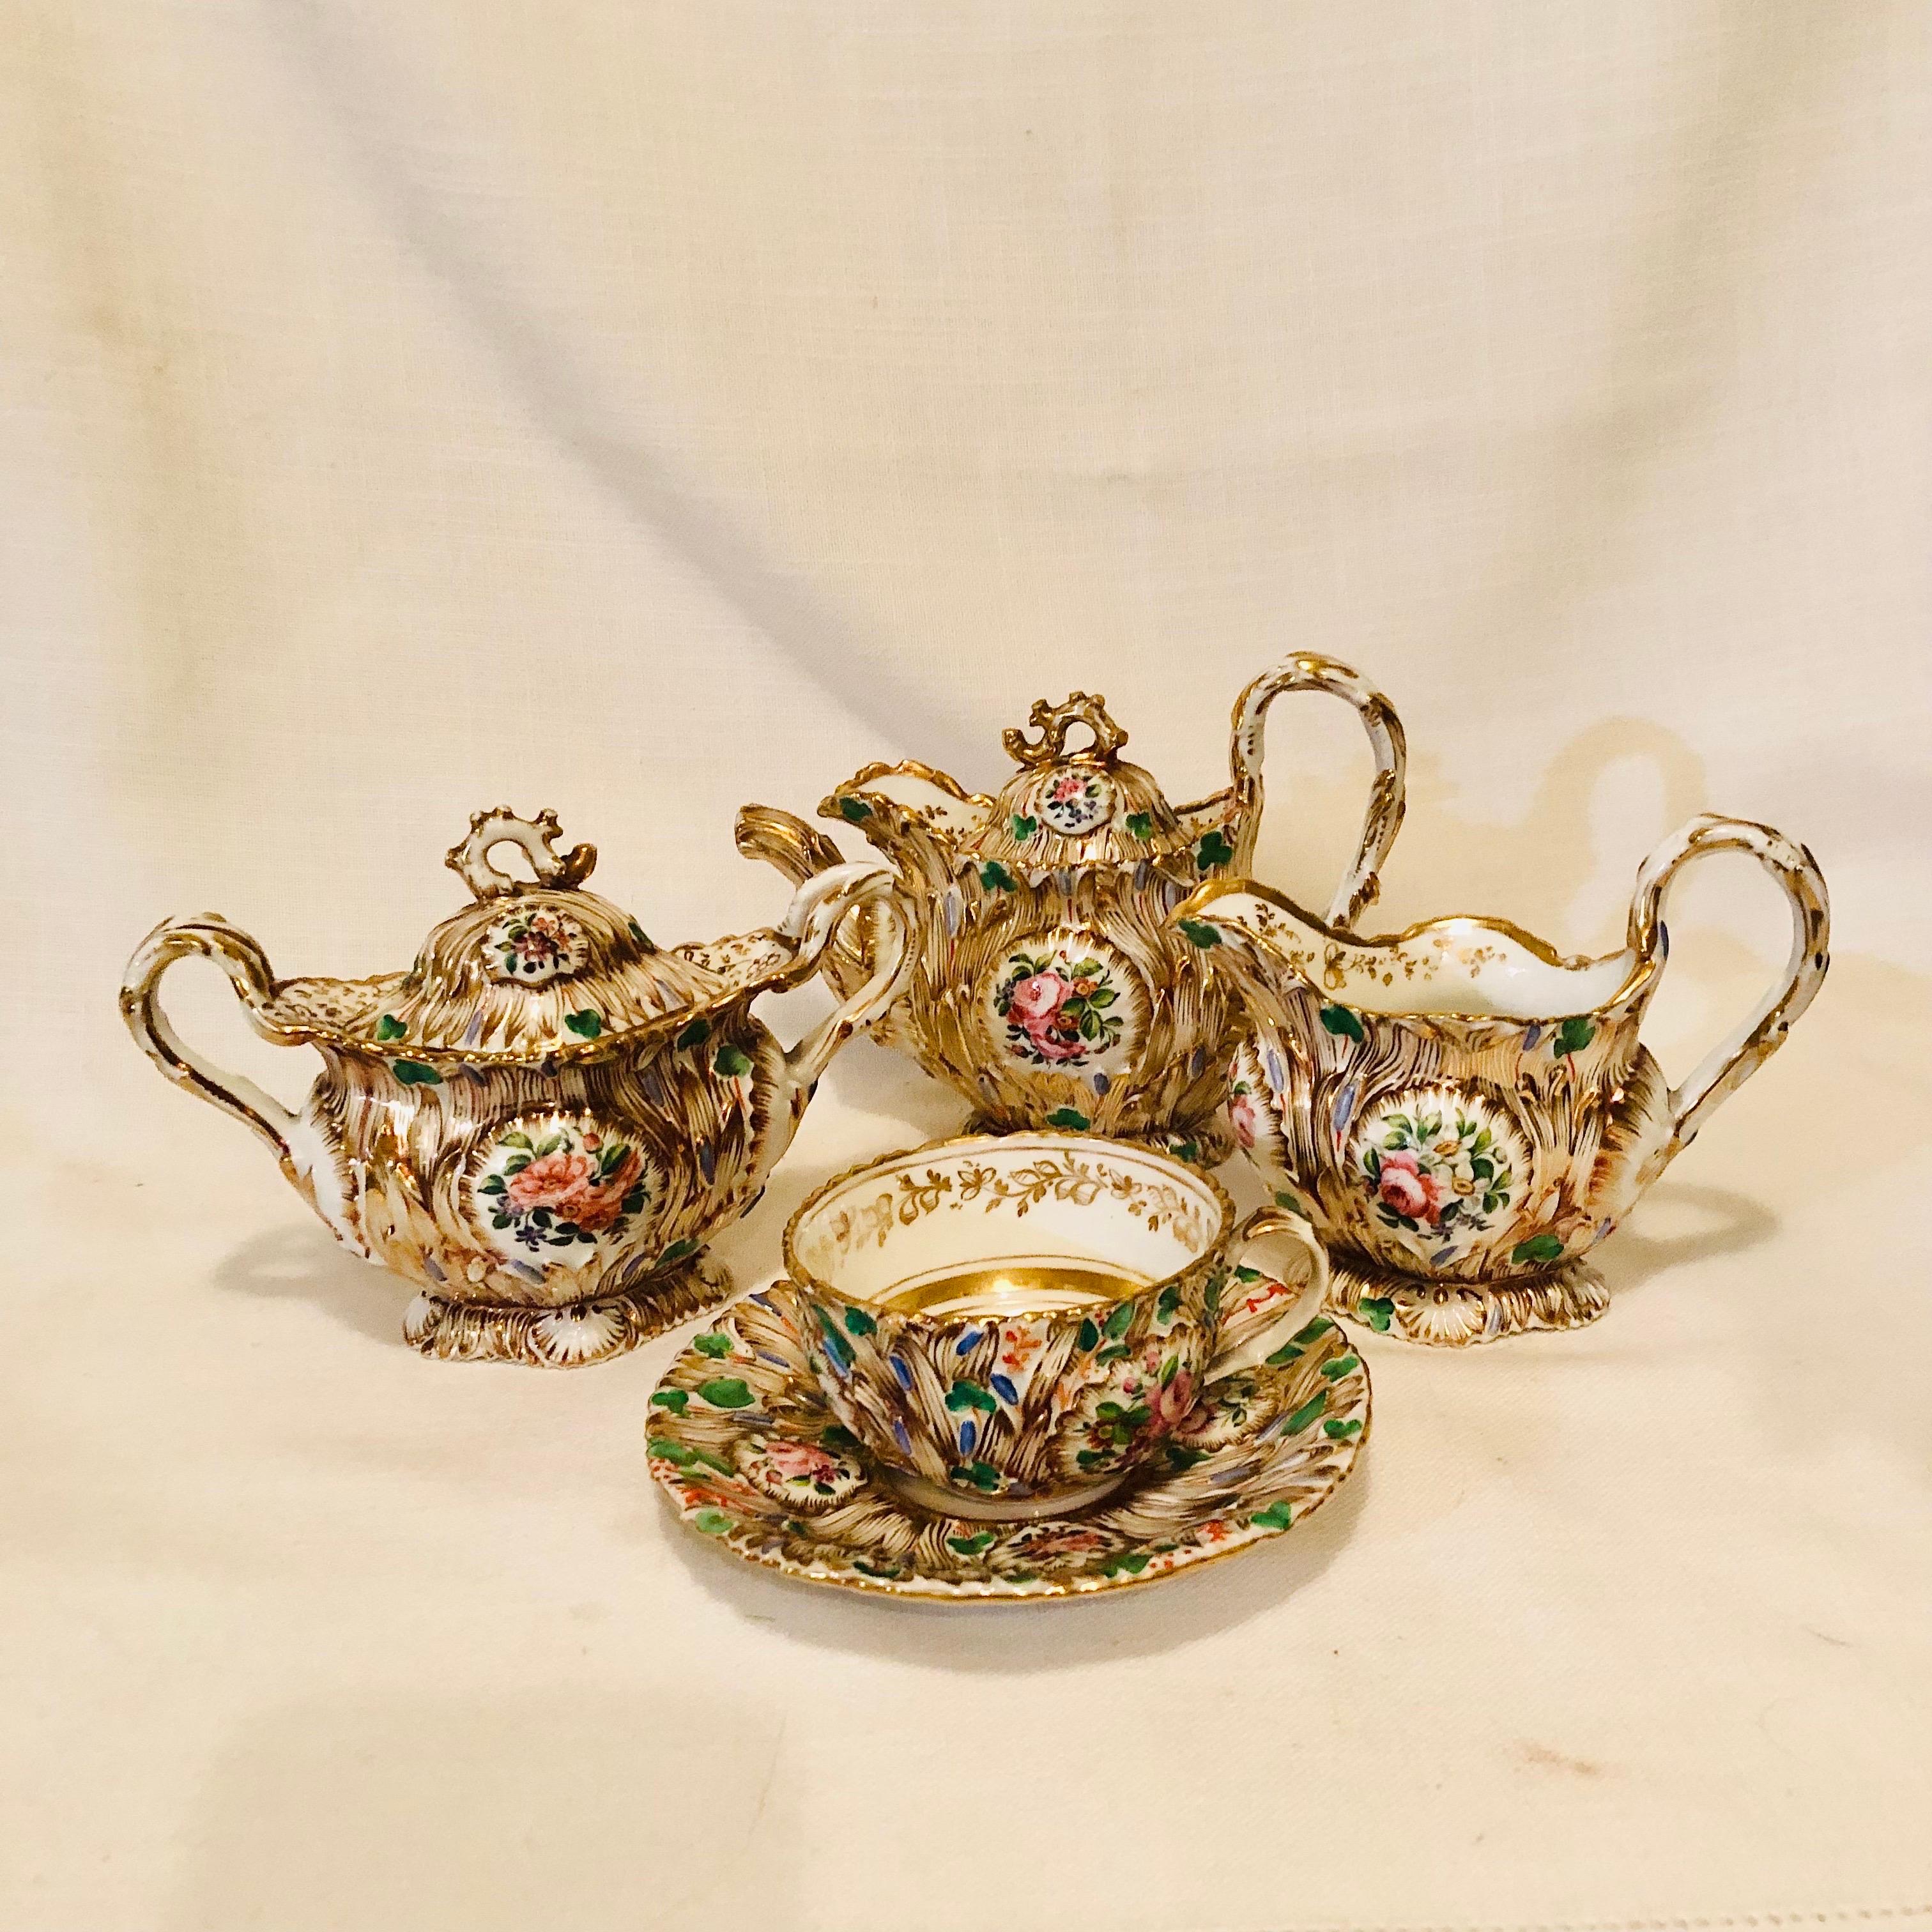 Jacob Petit Paris Porcelain Tea Set with Gilt and Colorful Rococo Decoration For Sale 5